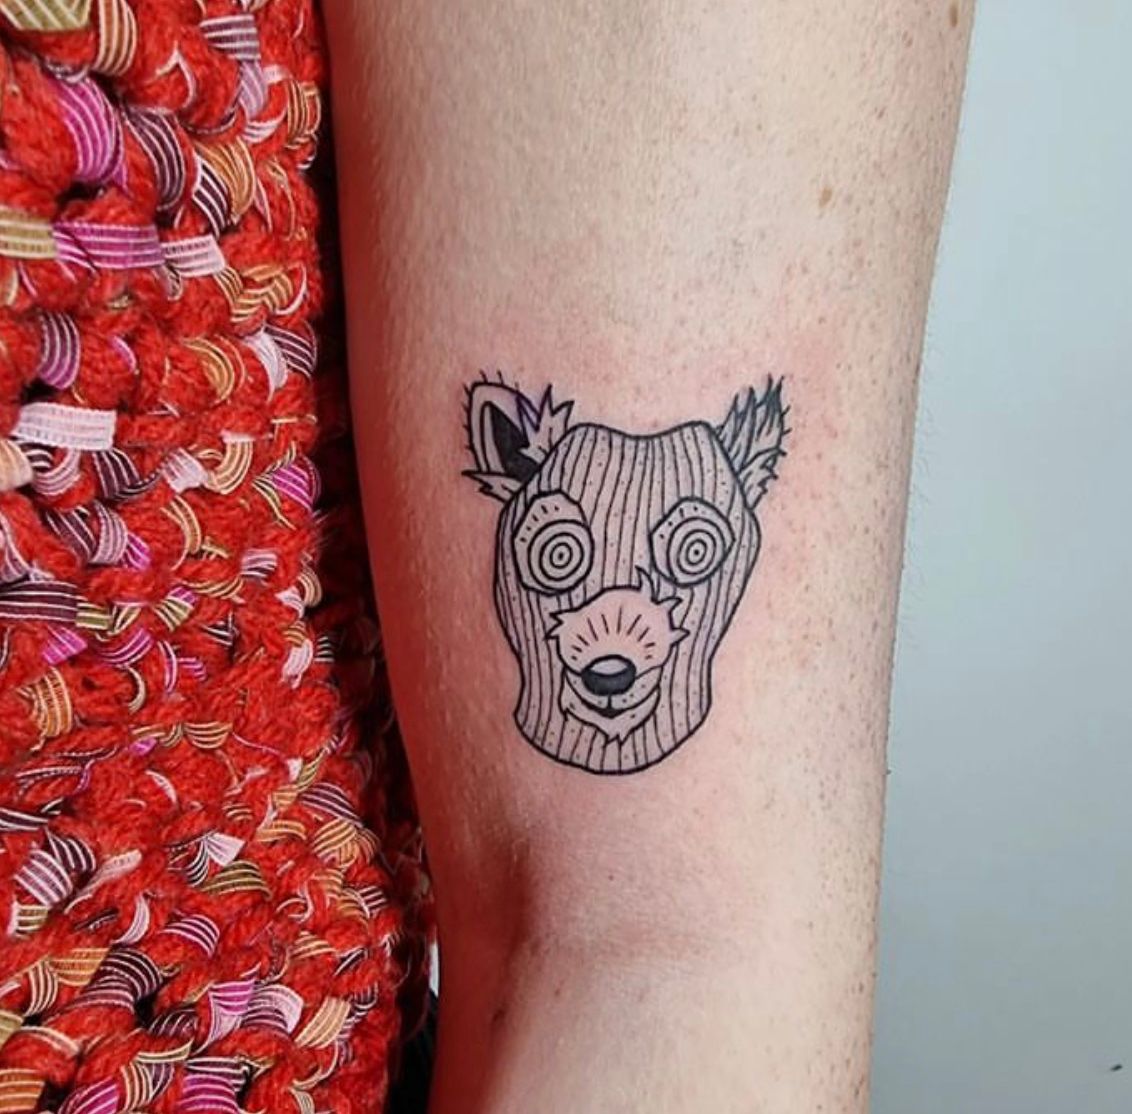 Fantastic mr fox tattoo